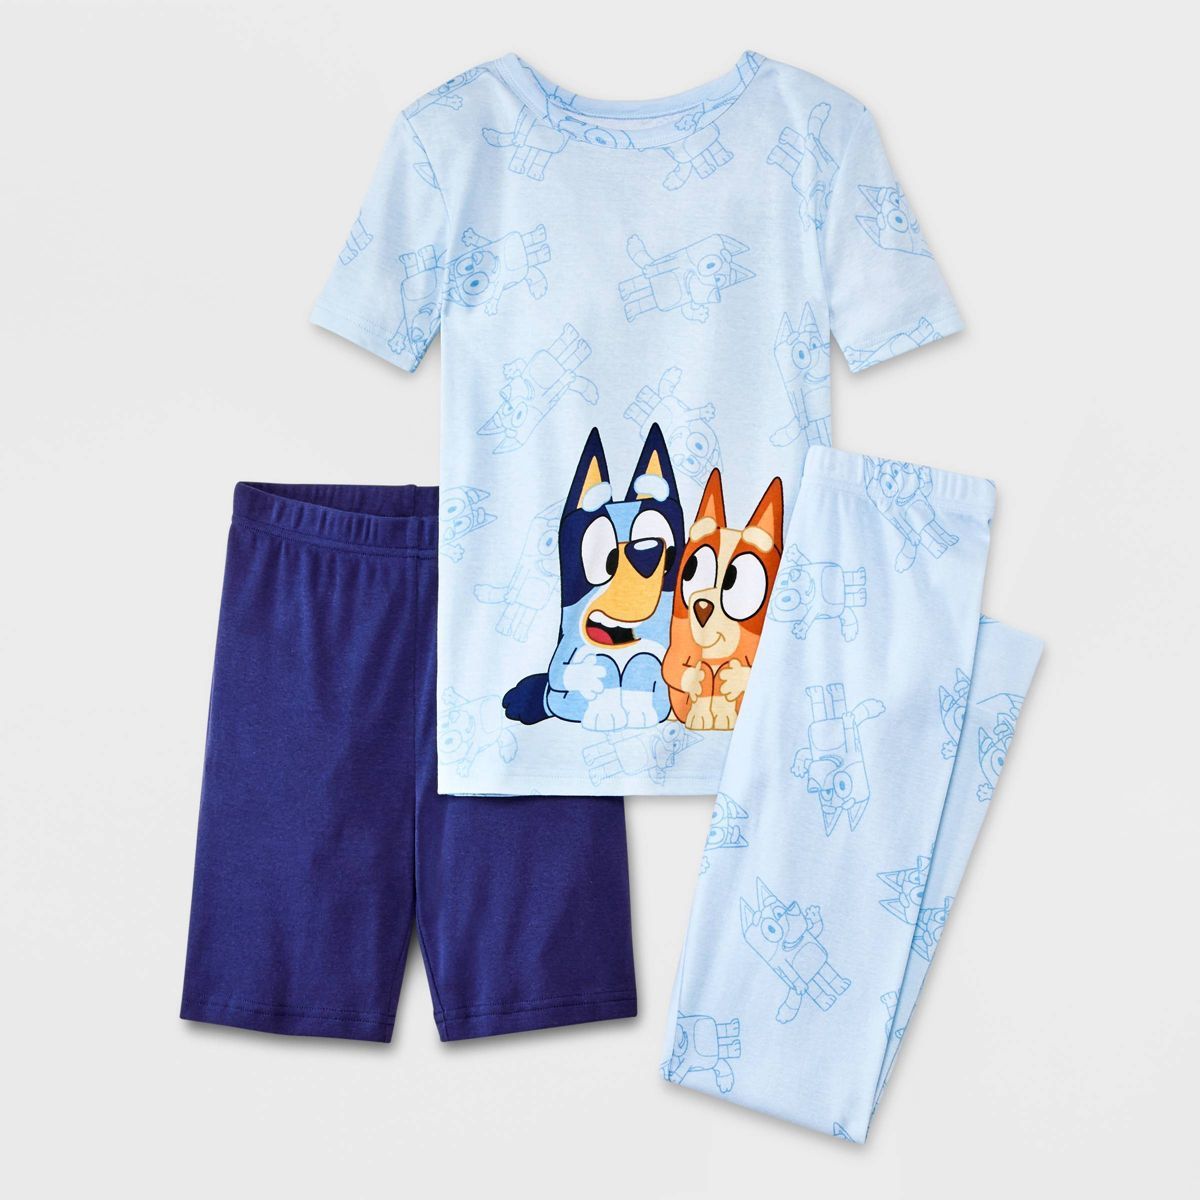 Boys' Bluey 3pc Pajama Set - Blue | Target